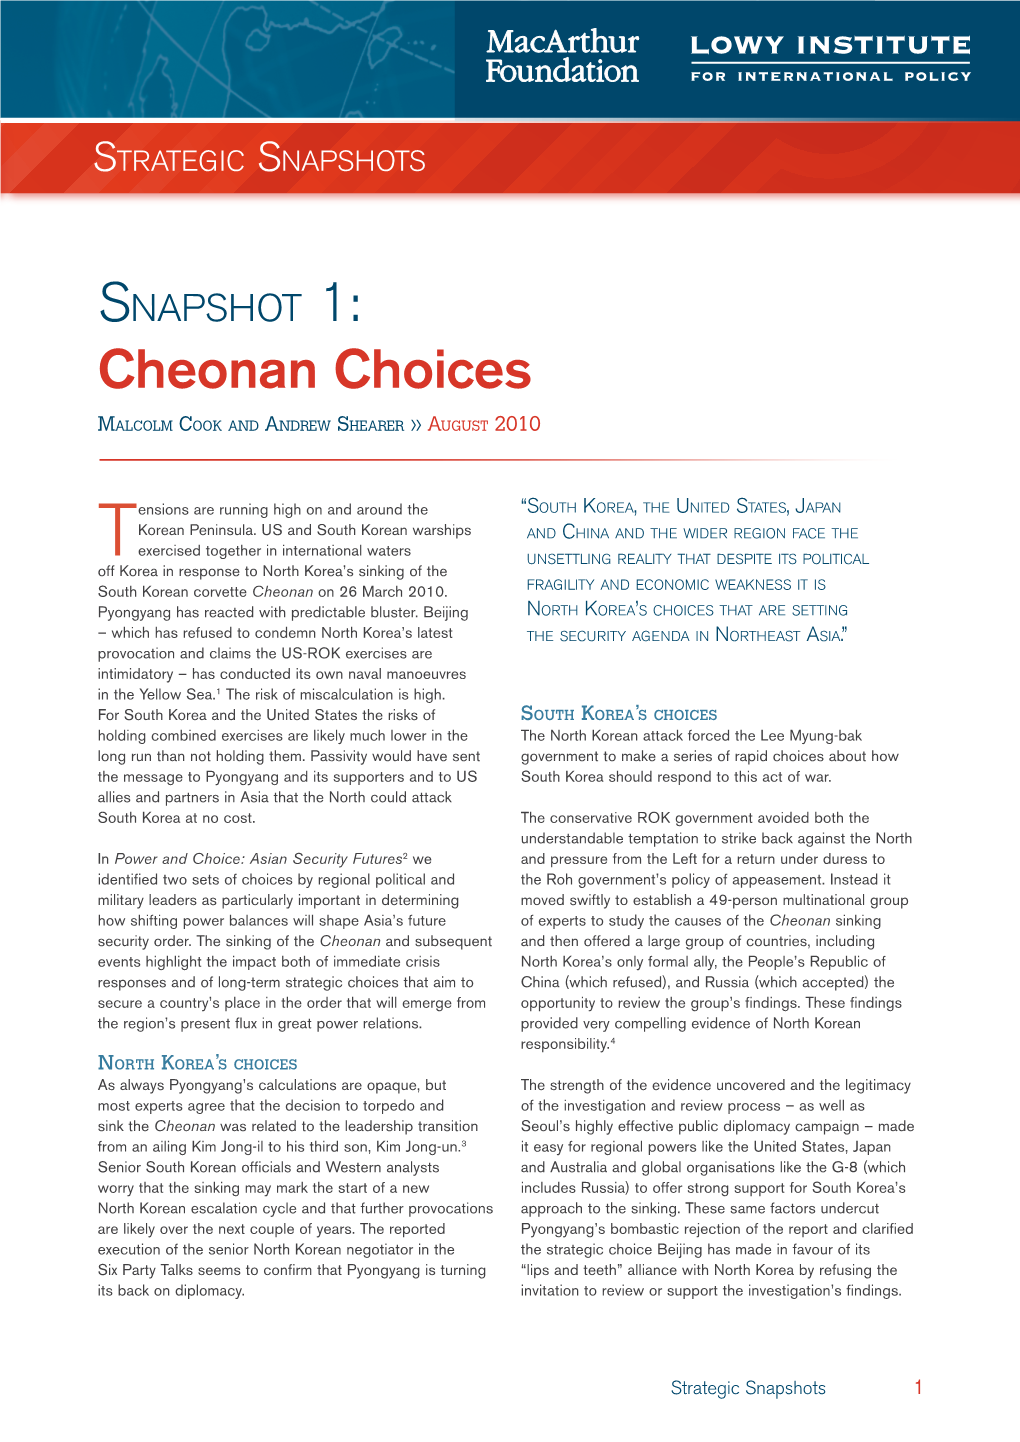 Cheonan Choices